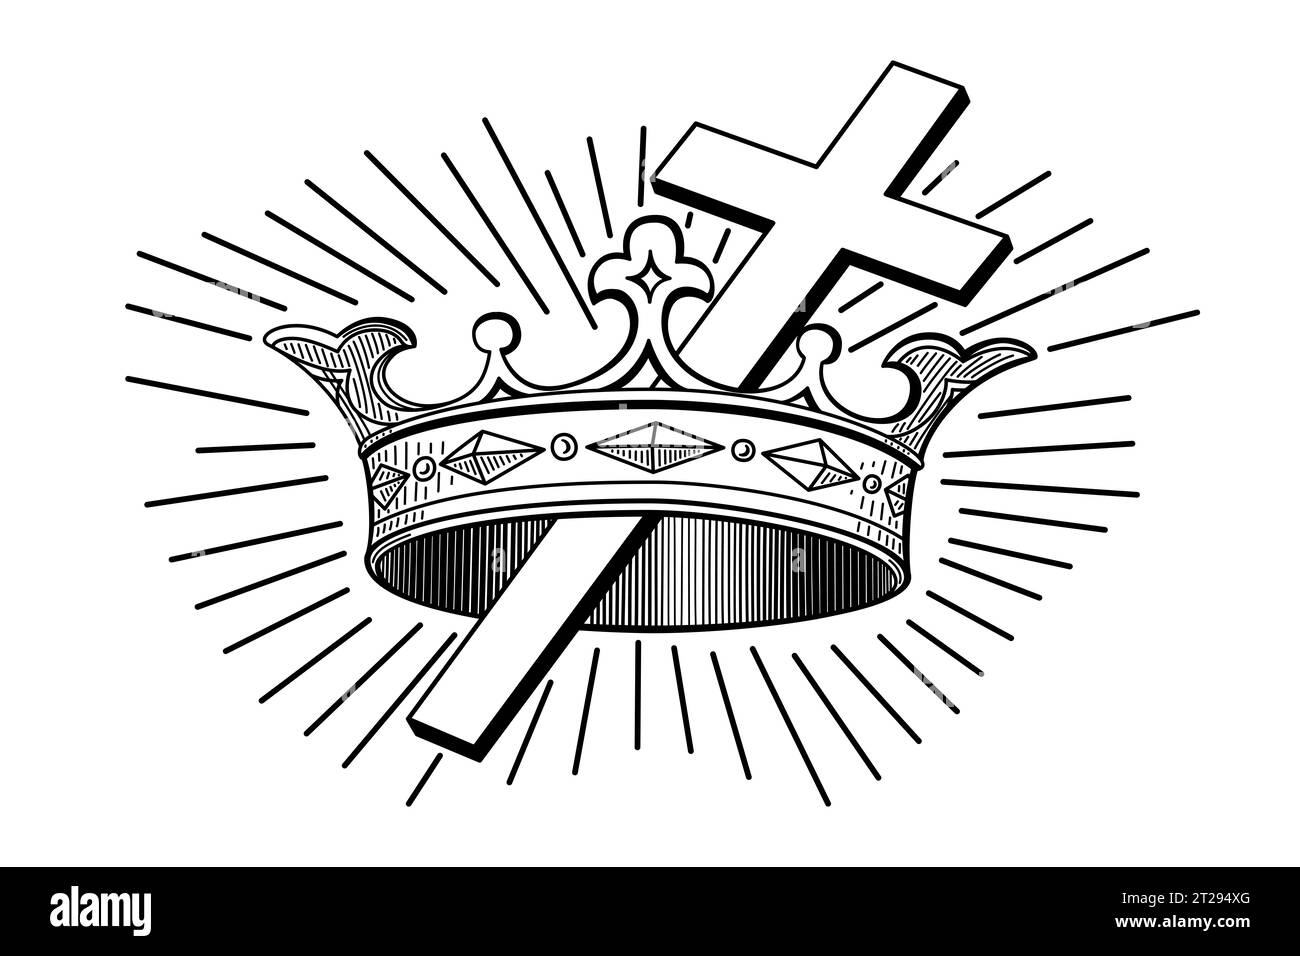 Croix et Couronne, un symbole chrétien. La couronne représente la récompense dans le ciel, venant après les épreuves dans cette vie, symbolisée par une croix latine. Banque D'Images